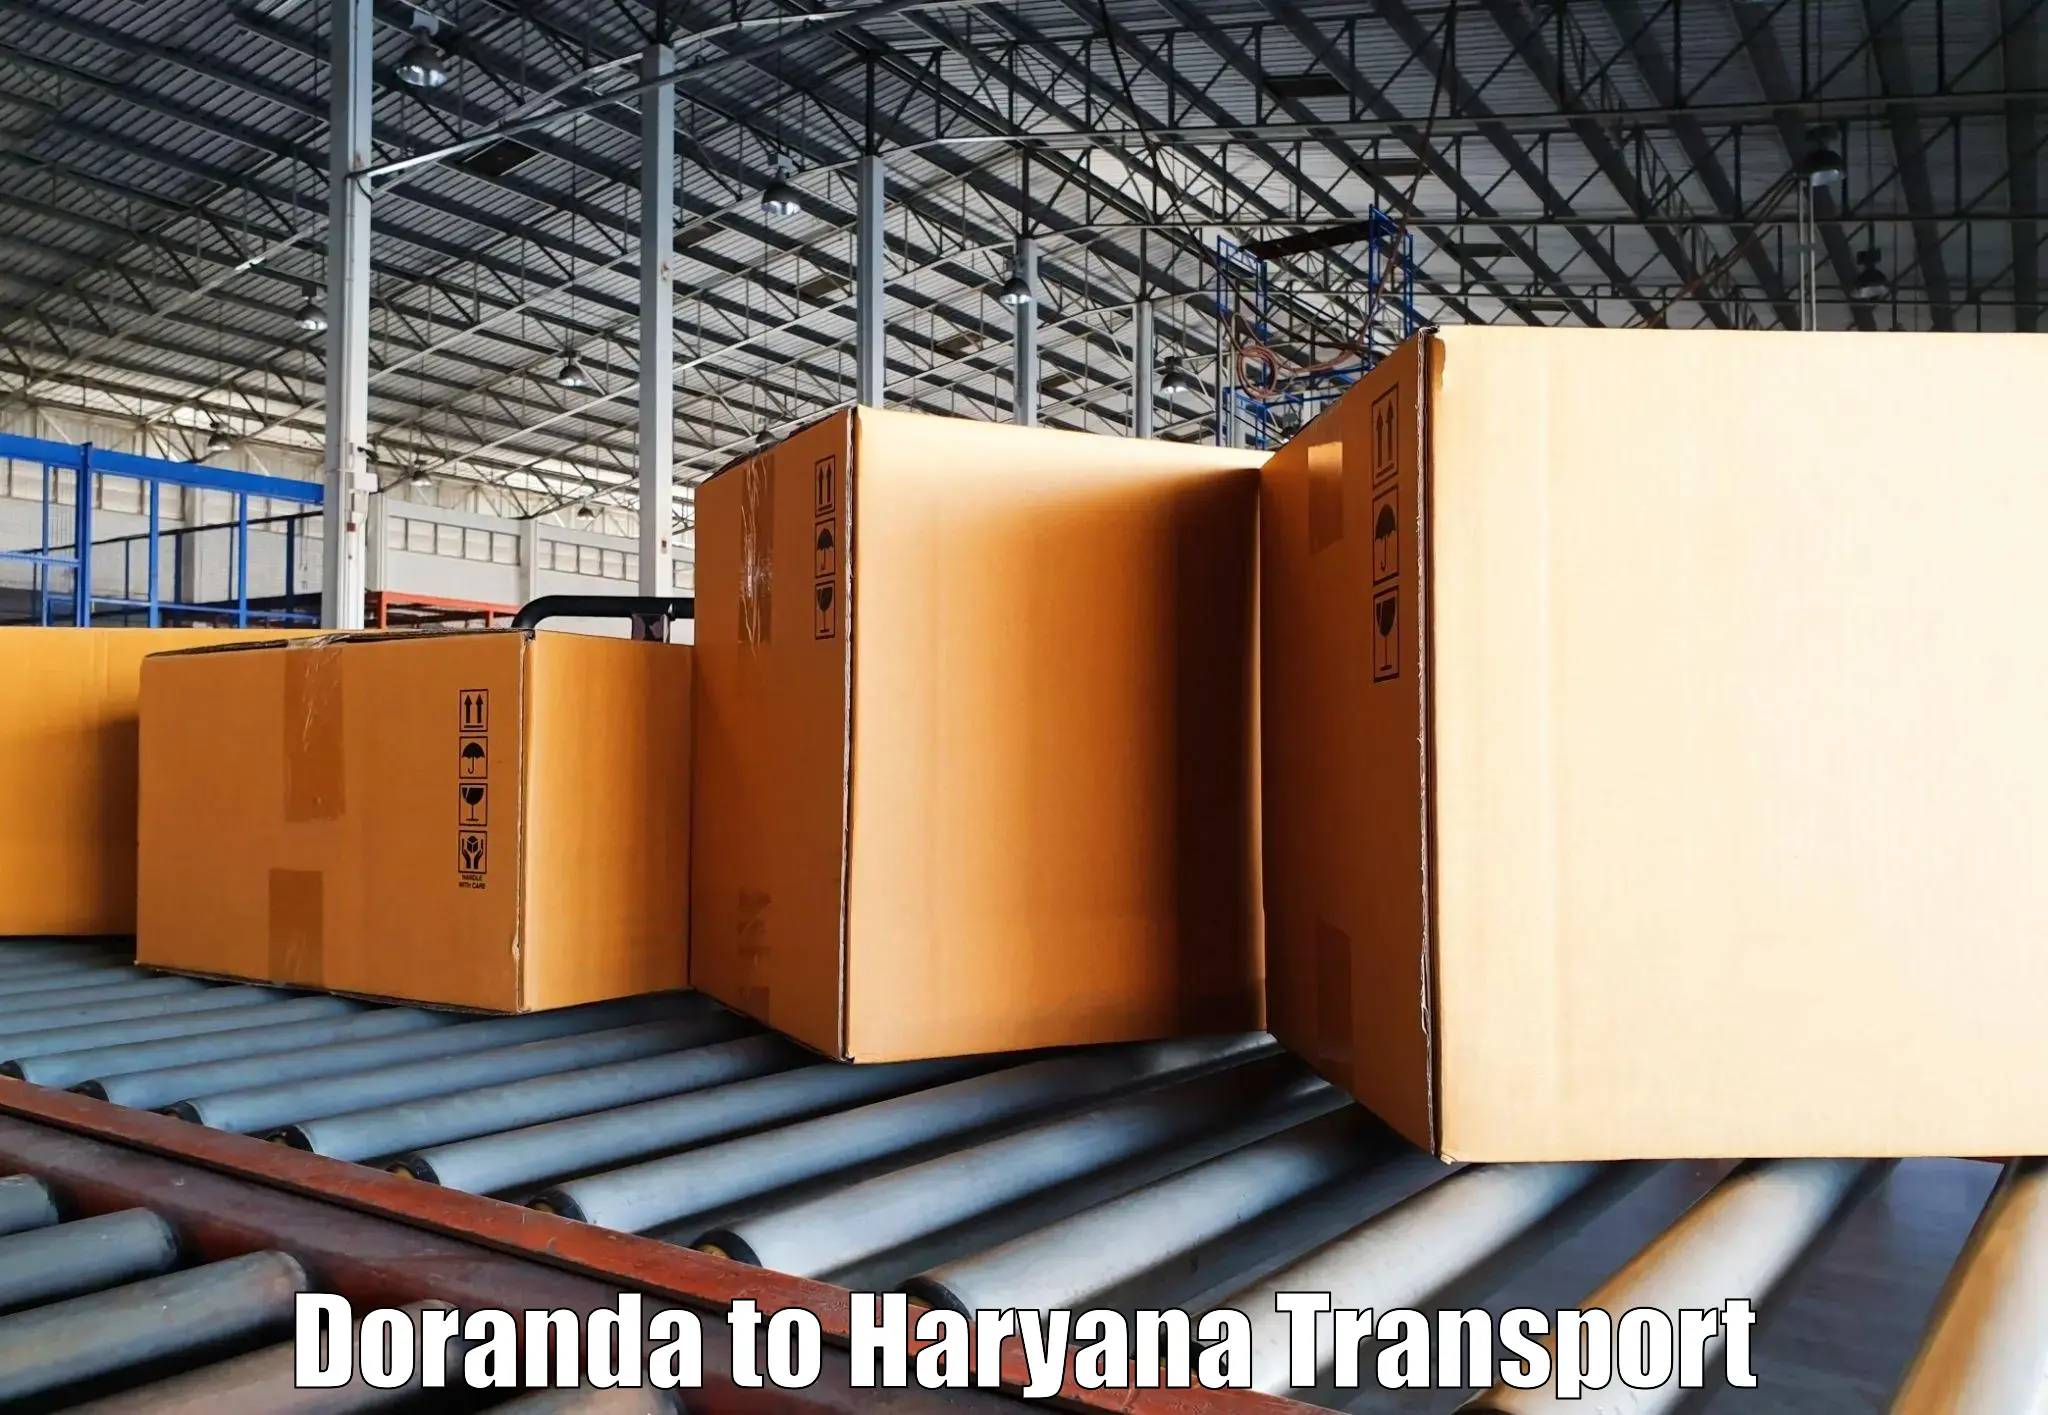 Air freight transport services Doranda to Gohana